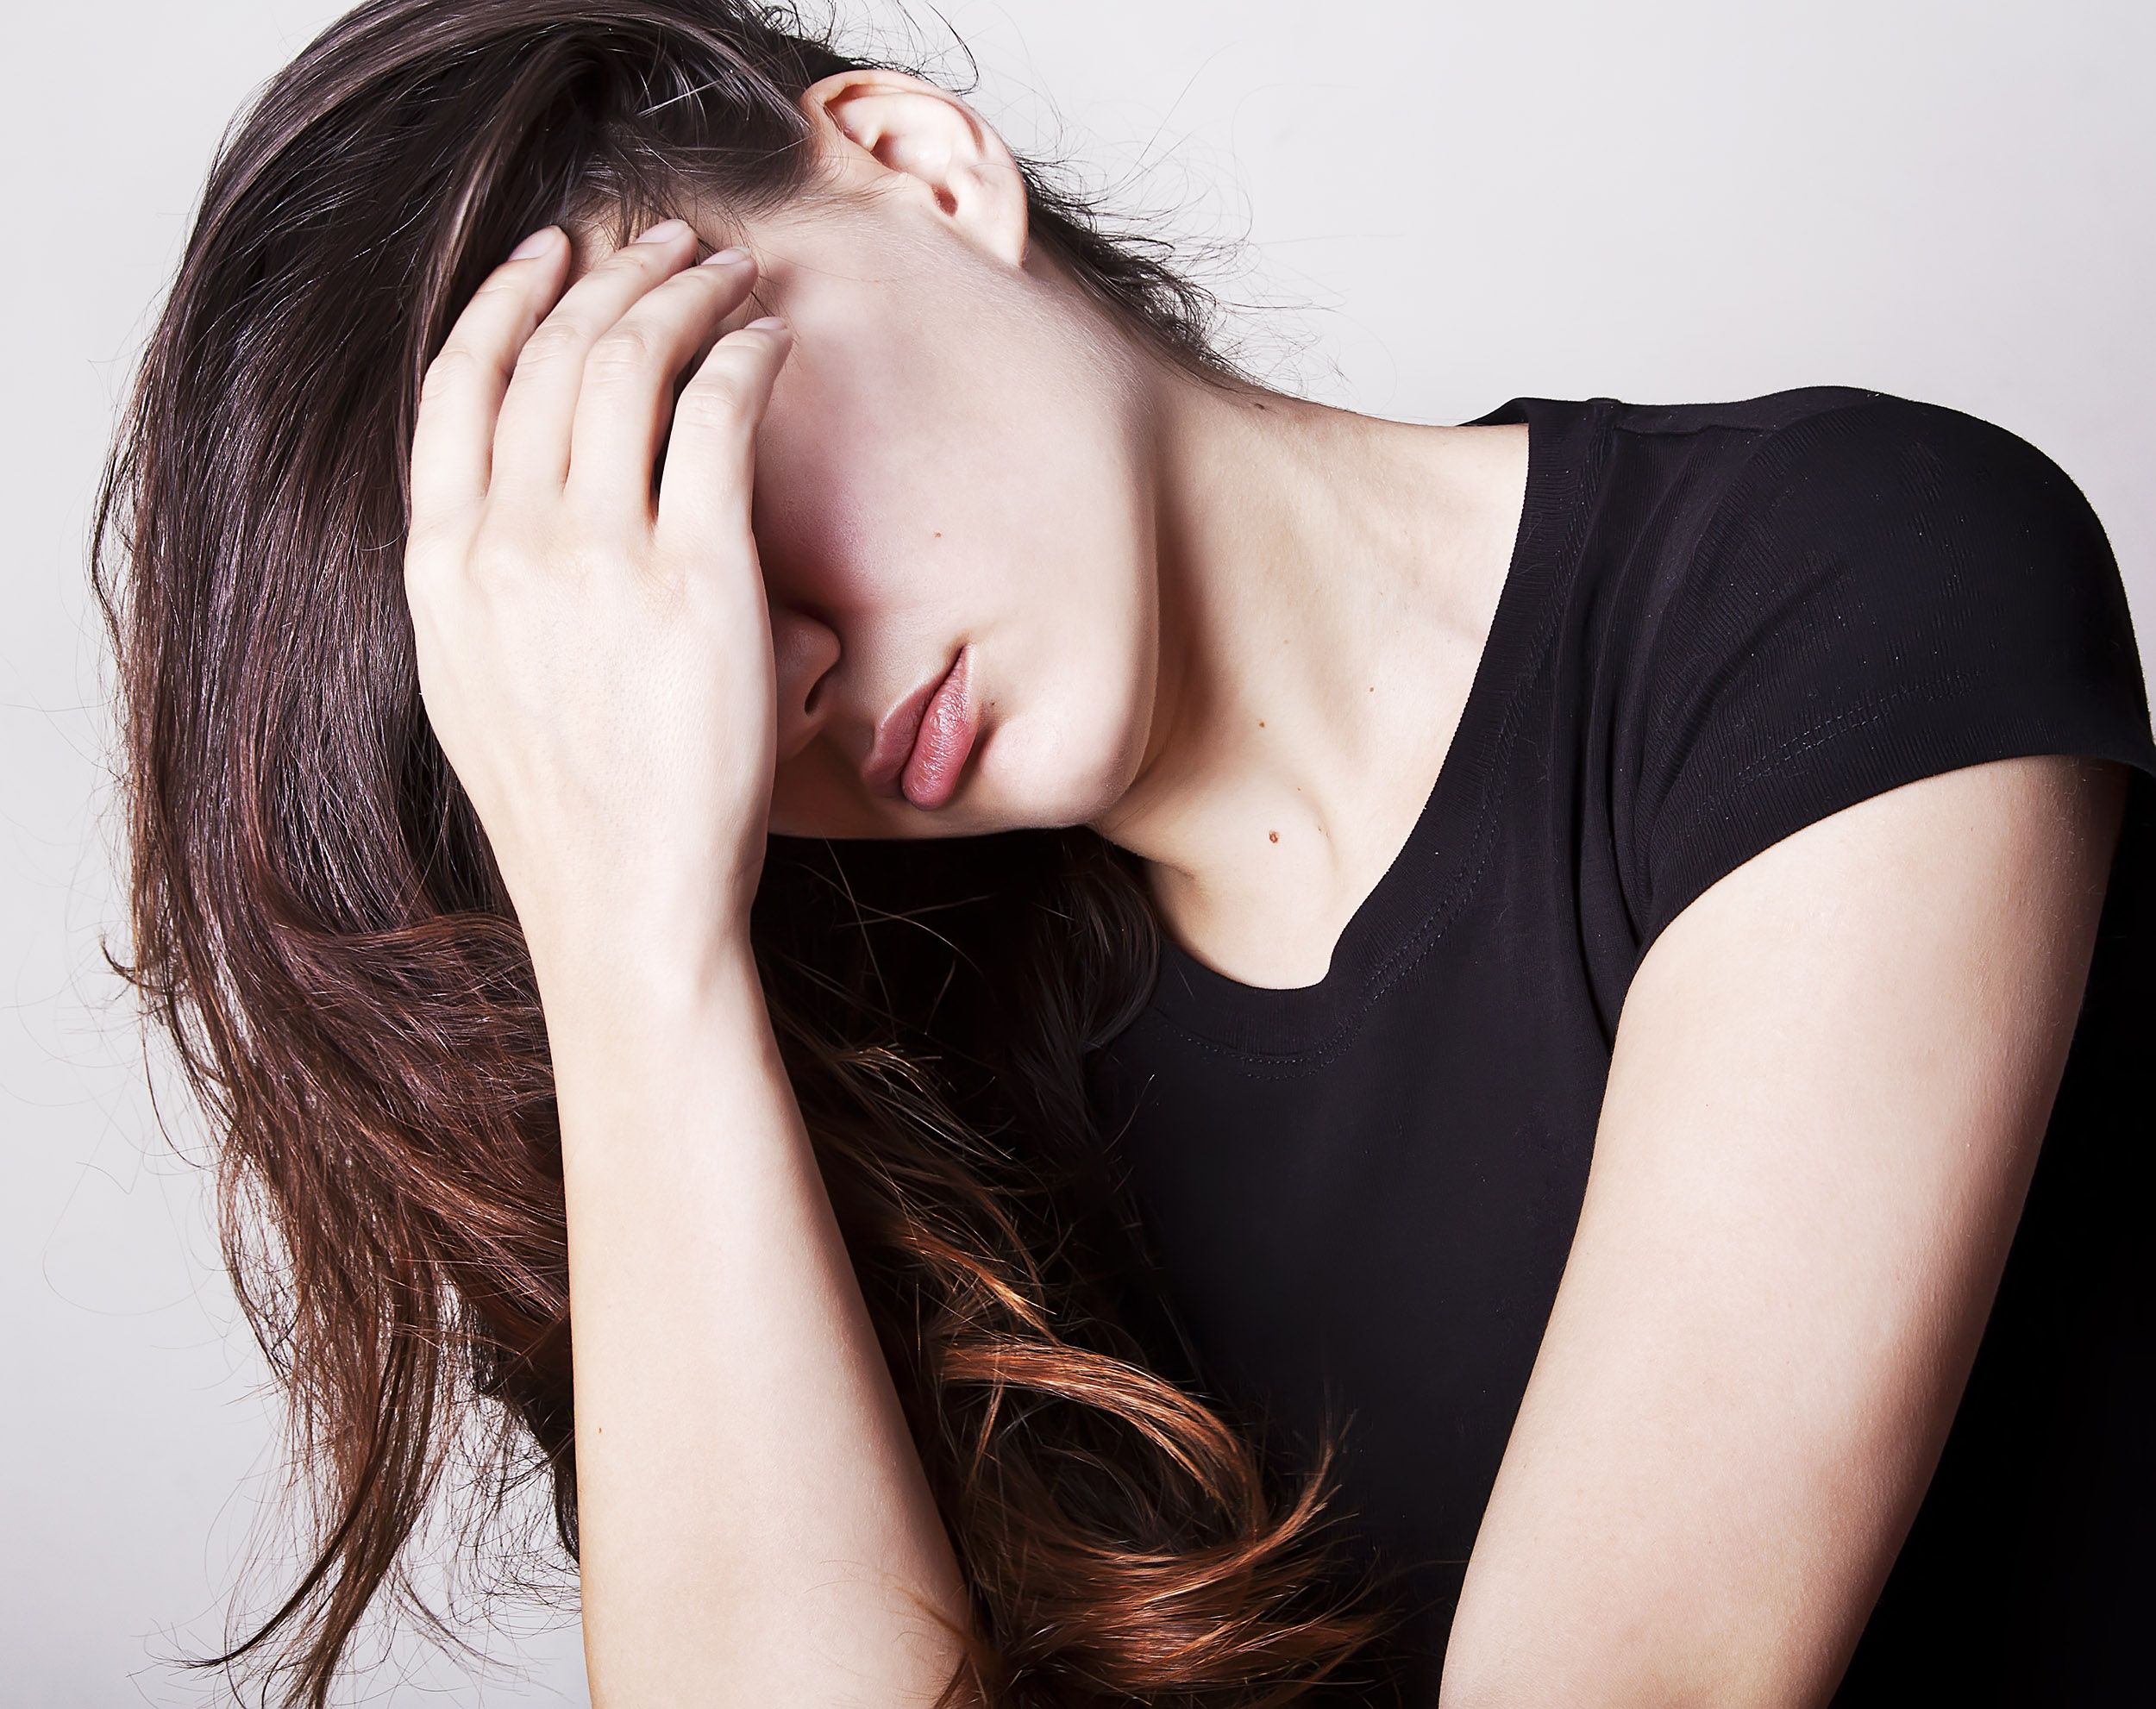 мигрень - одна из самых неприятных болезней